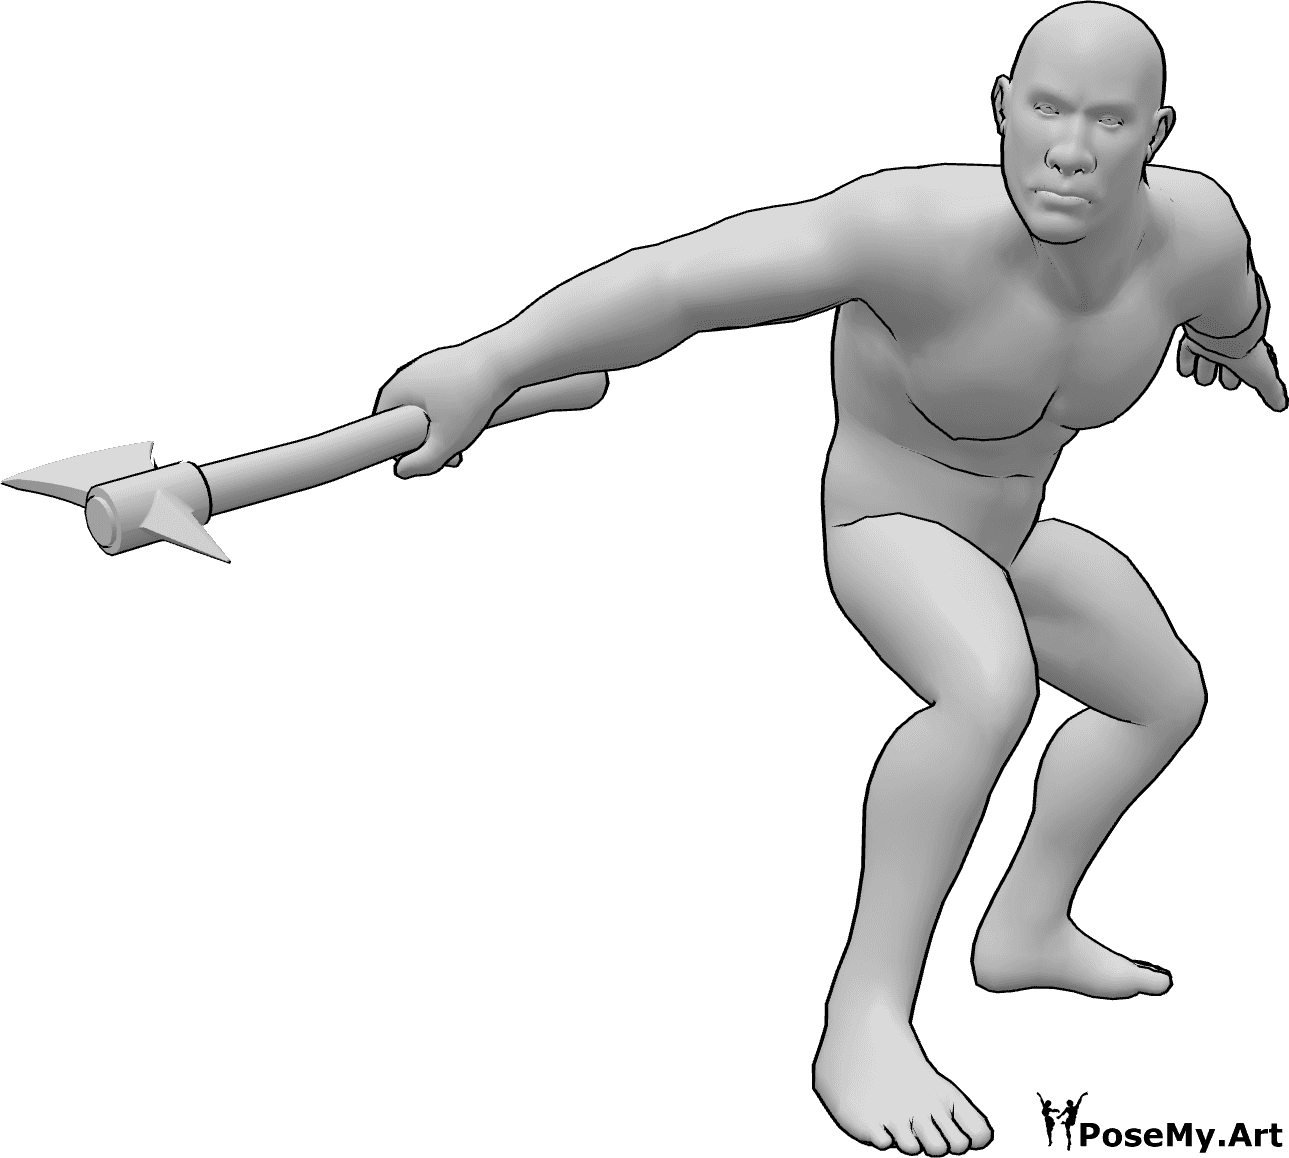 Référence des poses- Brute mâle pose de la hache - Homme brut prêt à attaquer avec une hache pose